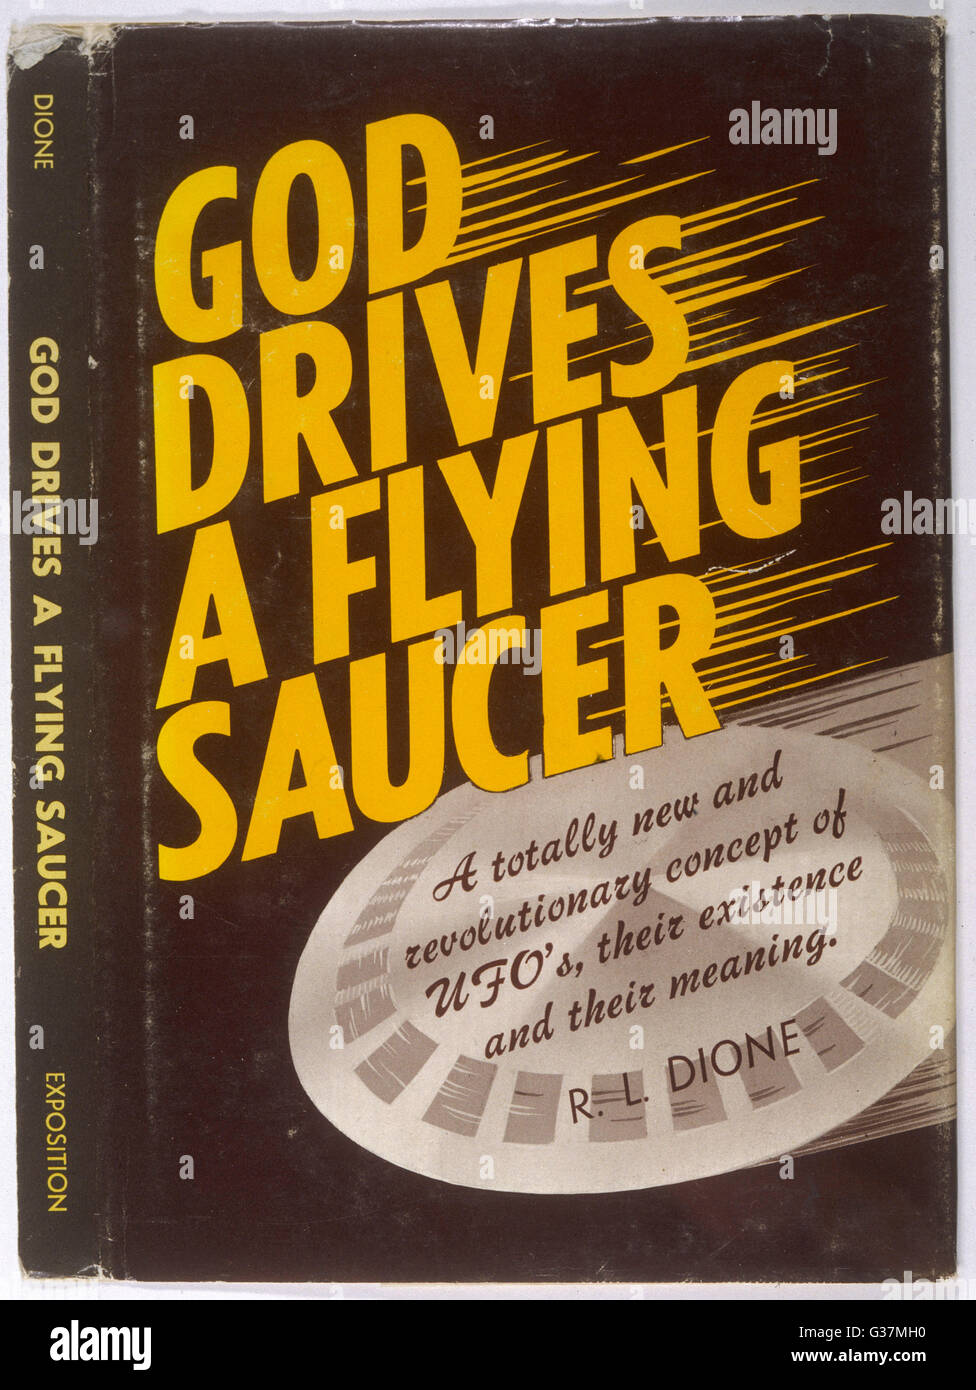 Couverture de livre, Dieu conduit une soucoupe volante, par R L Dione. Date : 1969 Banque D'Images